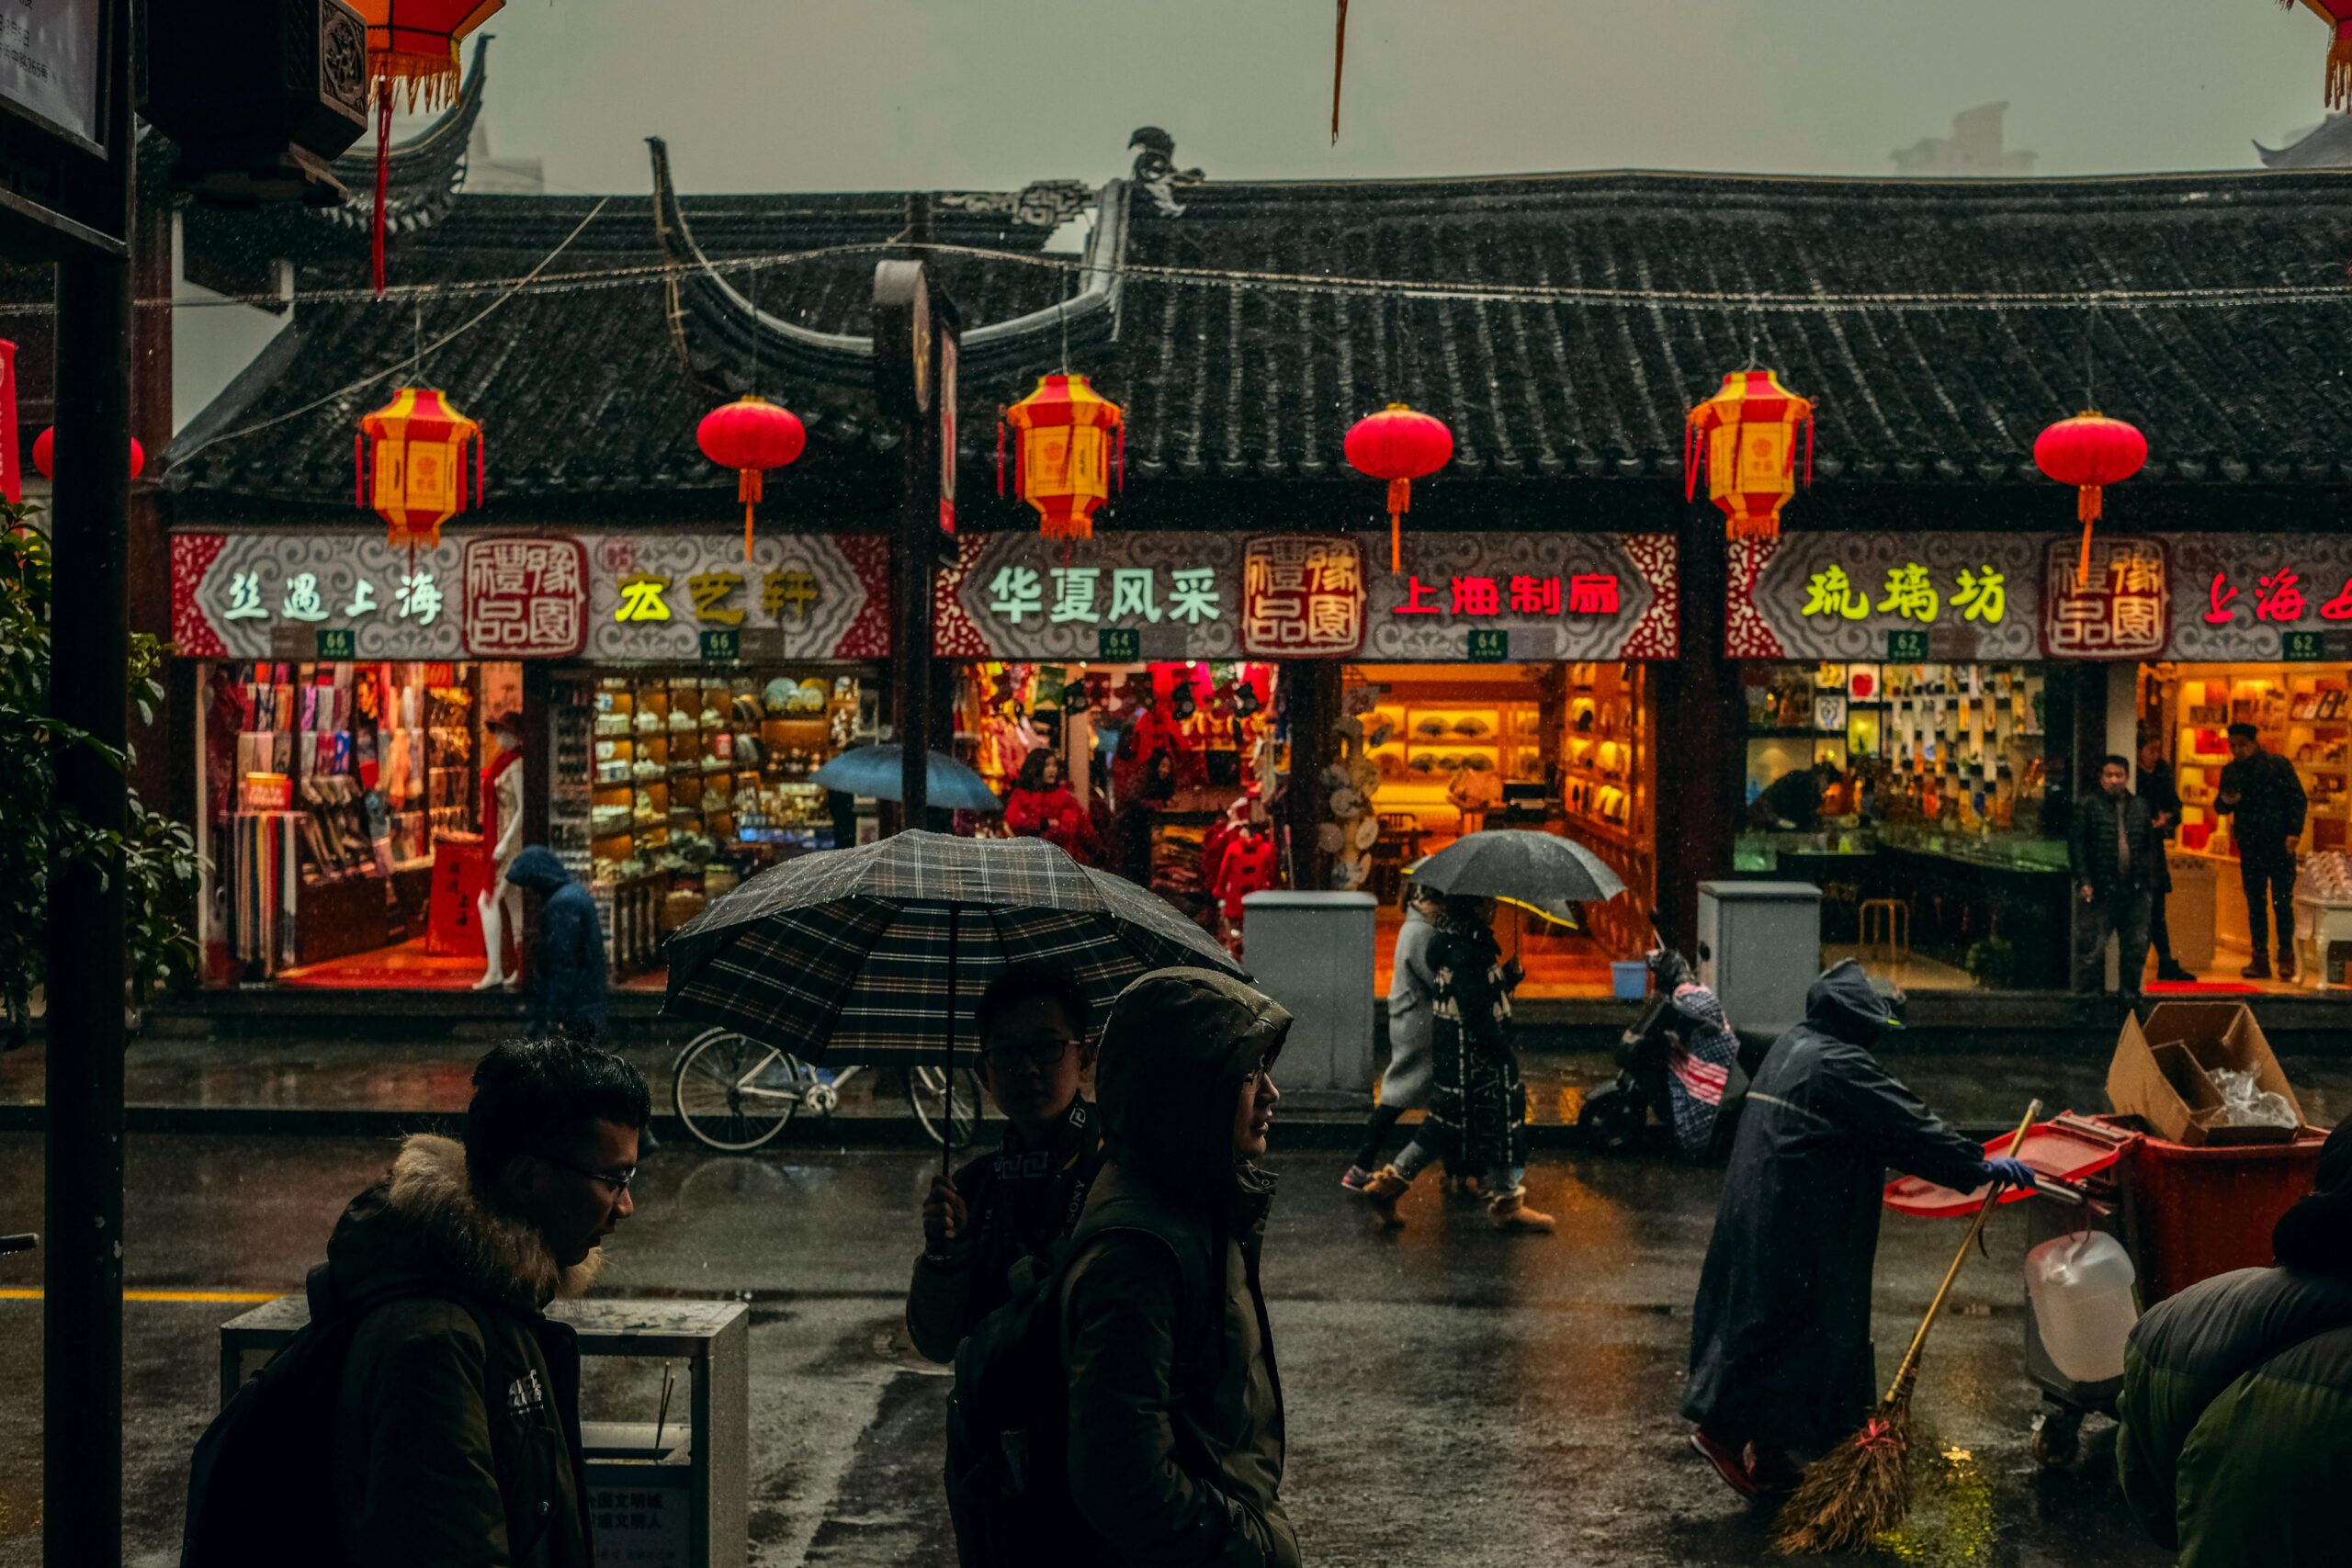 Shanghai traditionnal street under the rain